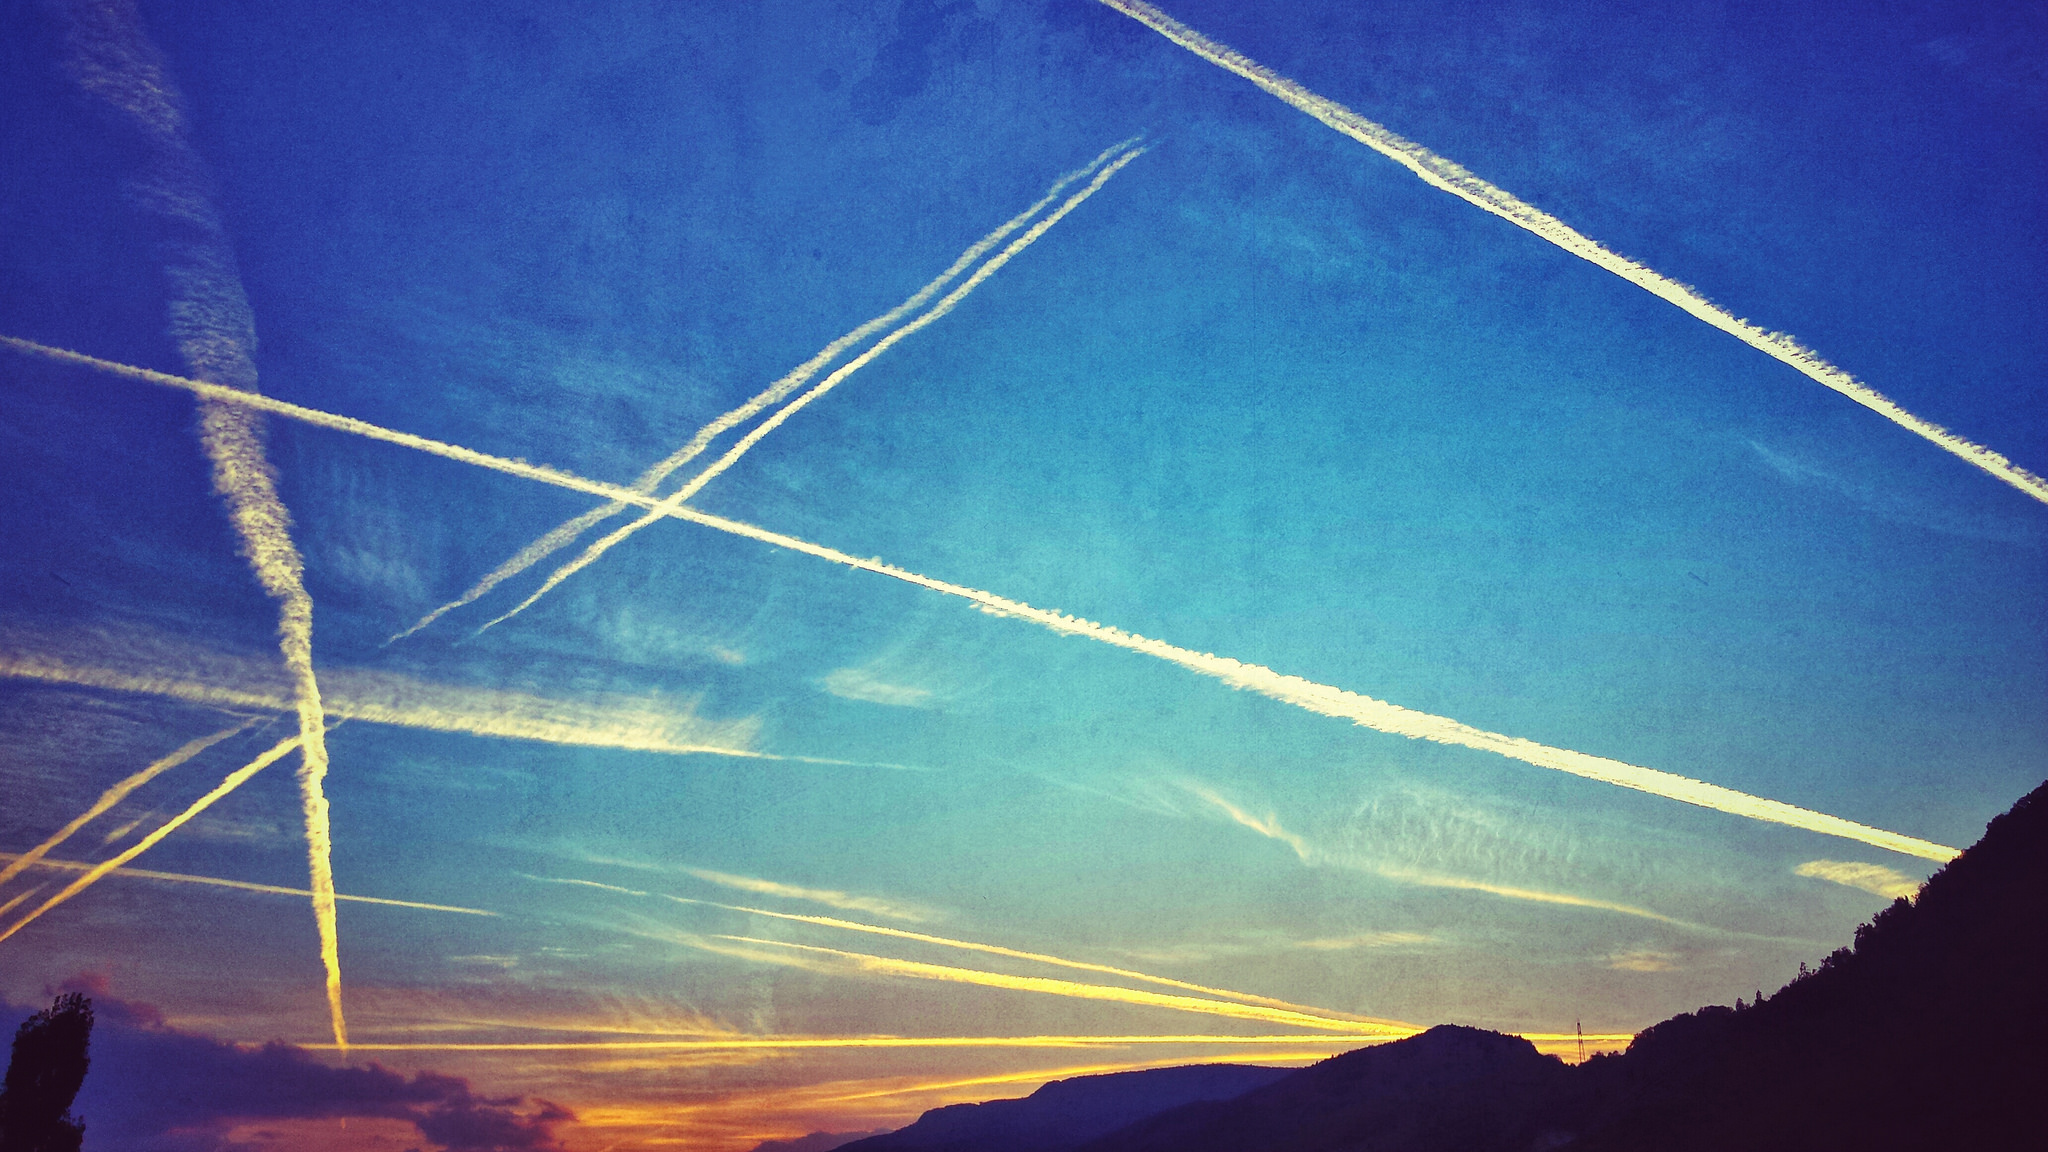 39 Organisationen fordern echte Klimaschutz-Maßnahmen statt Scheinlösungen im Flugverkehr